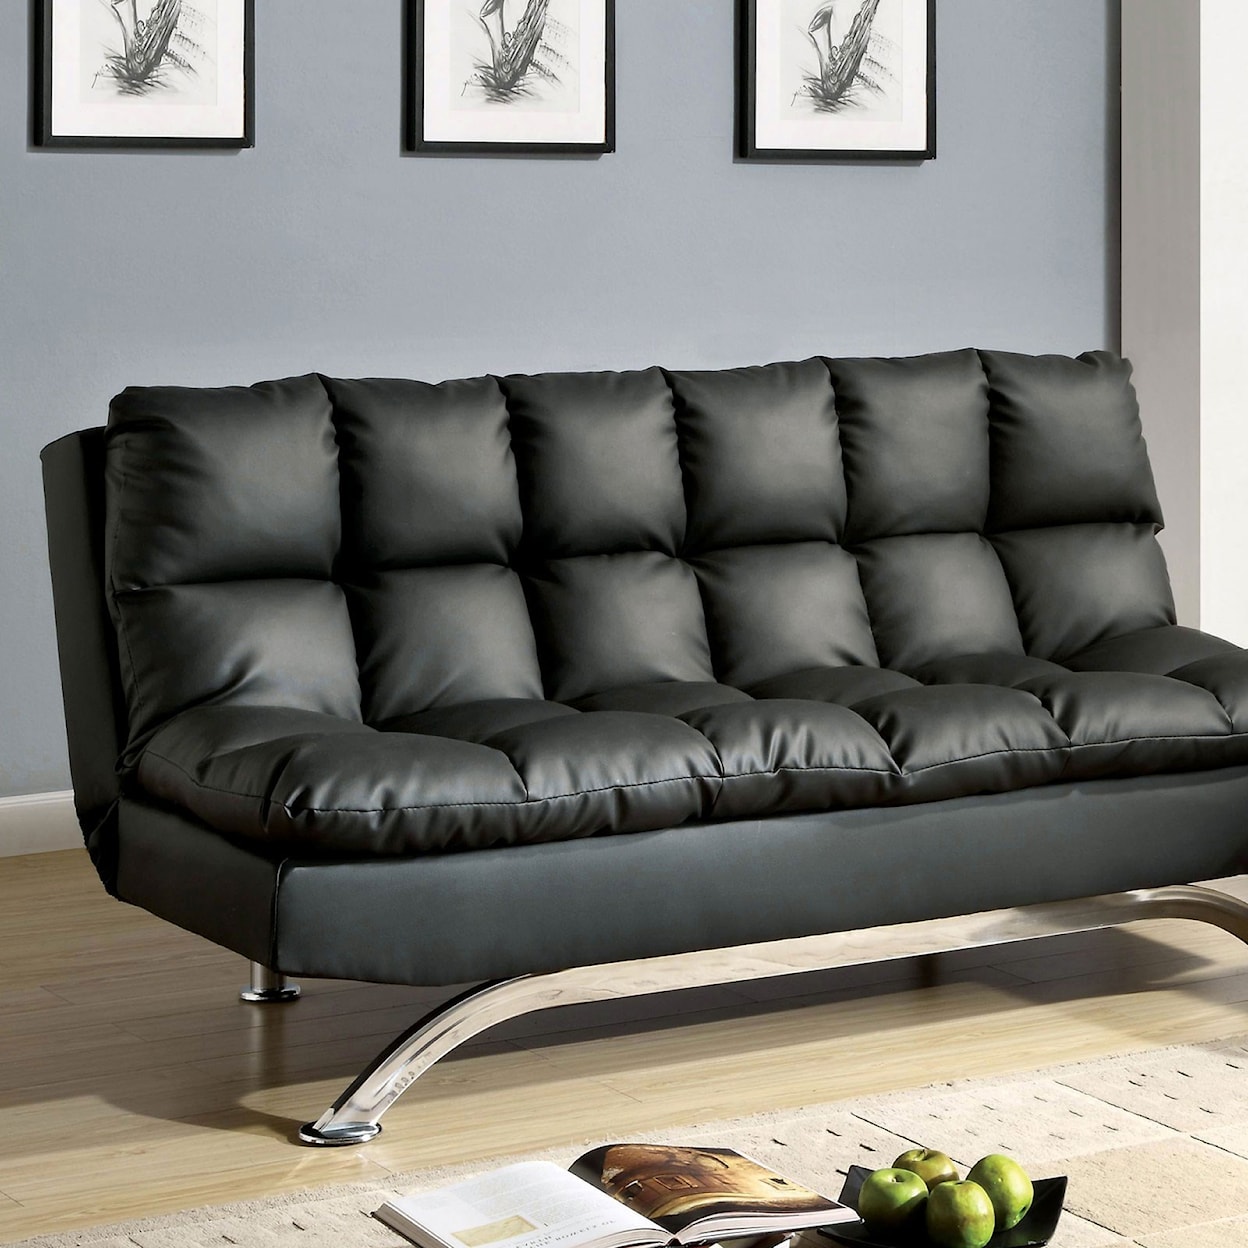 Furniture of America - FOA Aristo Leatherette Futon Sofa